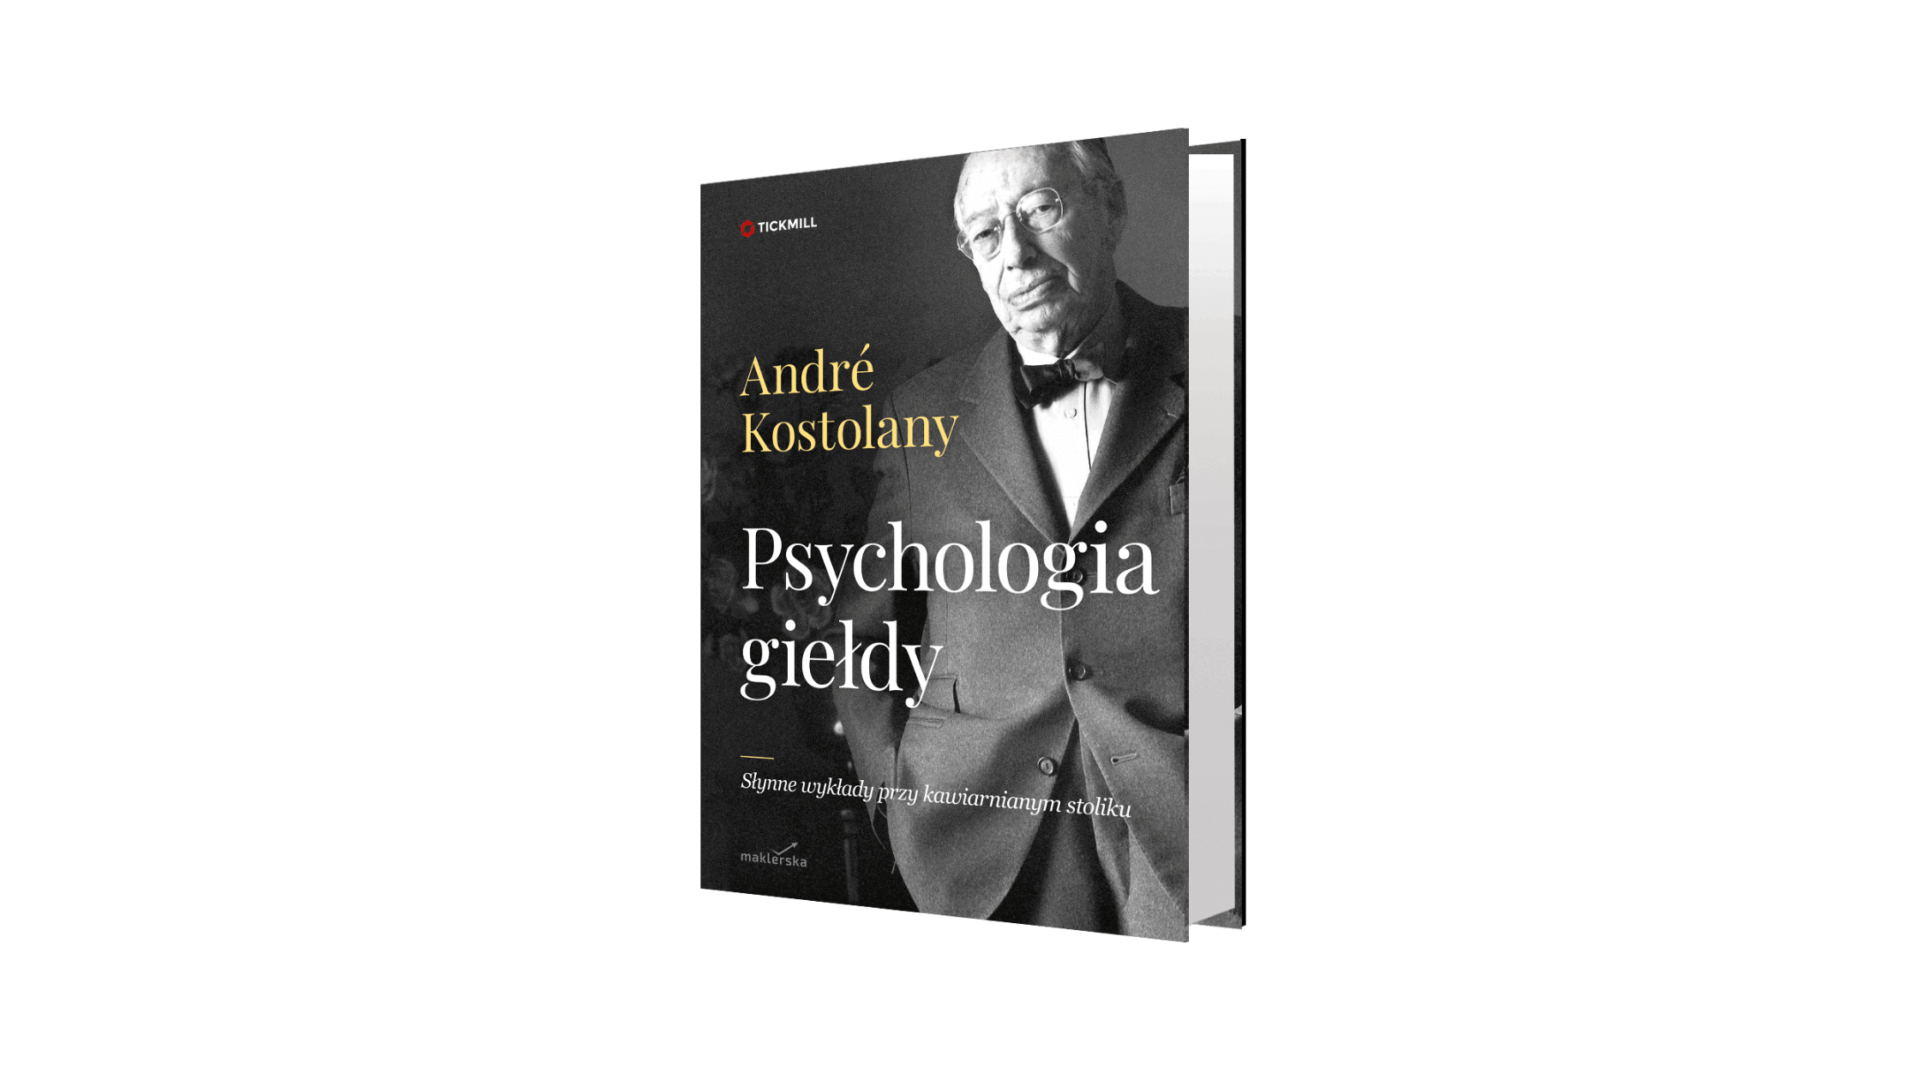 “Psychologia giełdy” - Andre Kostolany (recenzja książki)